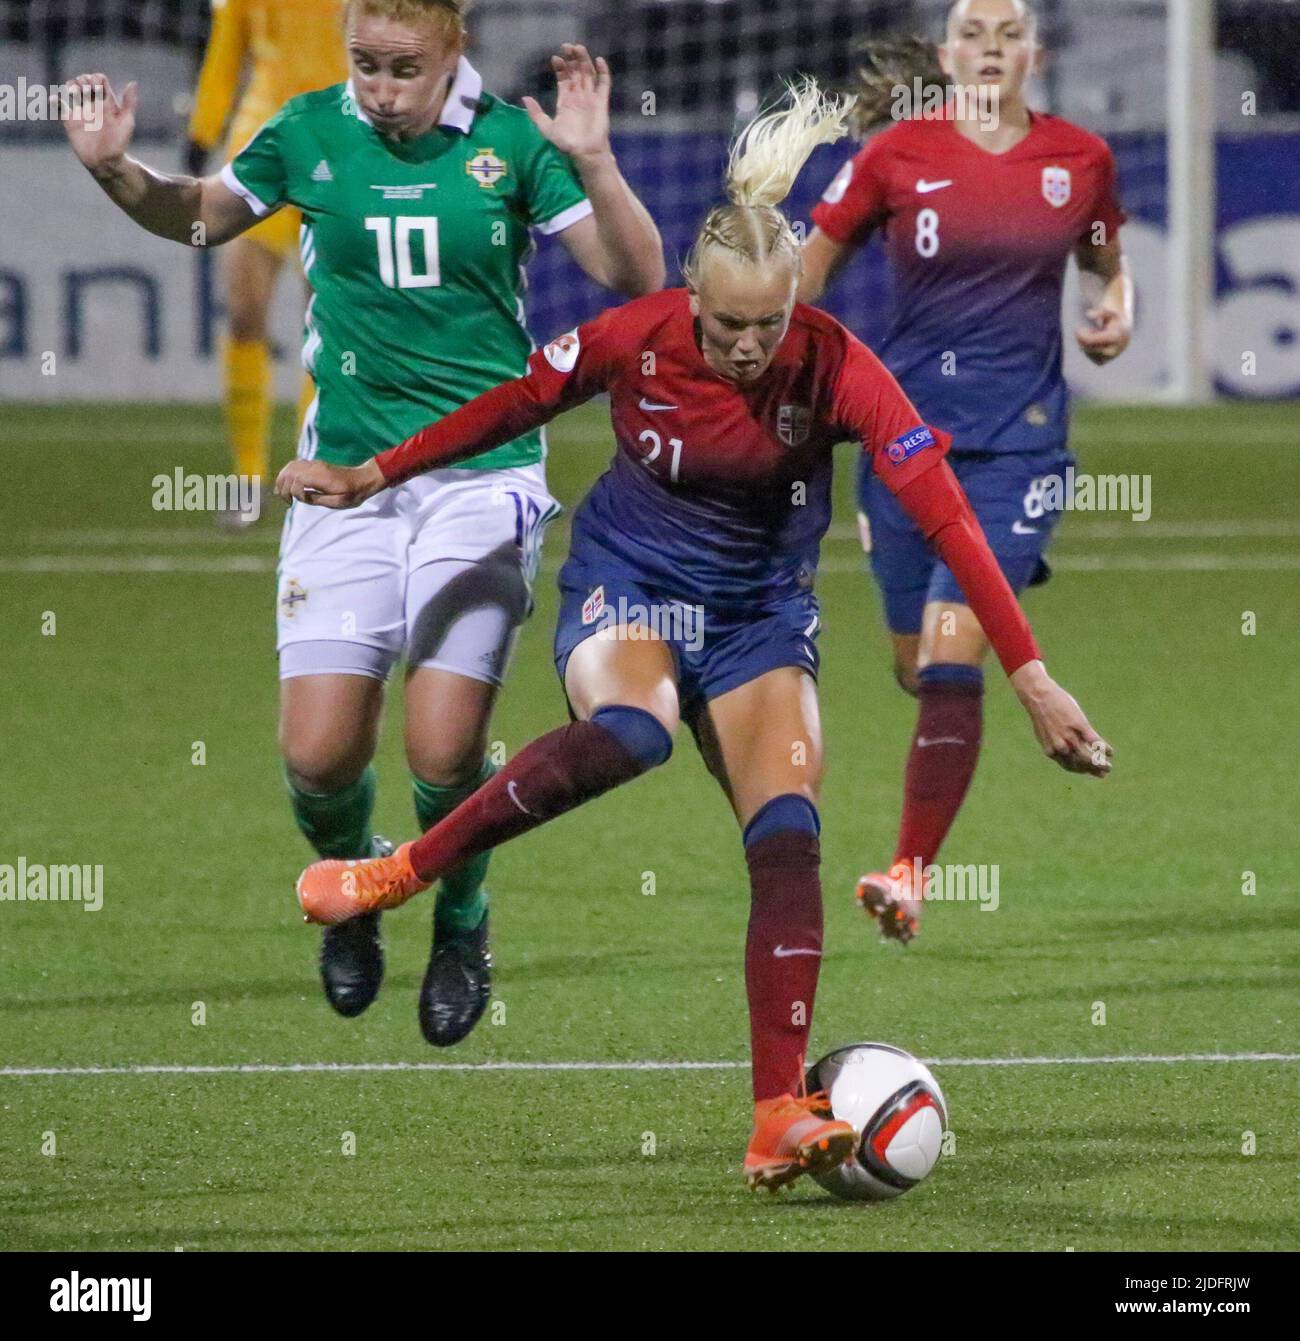 Campeonato Europeo Femenino de la UEFA 2021. 30 de agosto de 2019. Irlanda del Norte 0 Noruega 6 en Seaview, Belfast. Noruega Jugador de fútbol de la Internacional de Mujeres Karina Saevik Noruega (21). Foto de stock